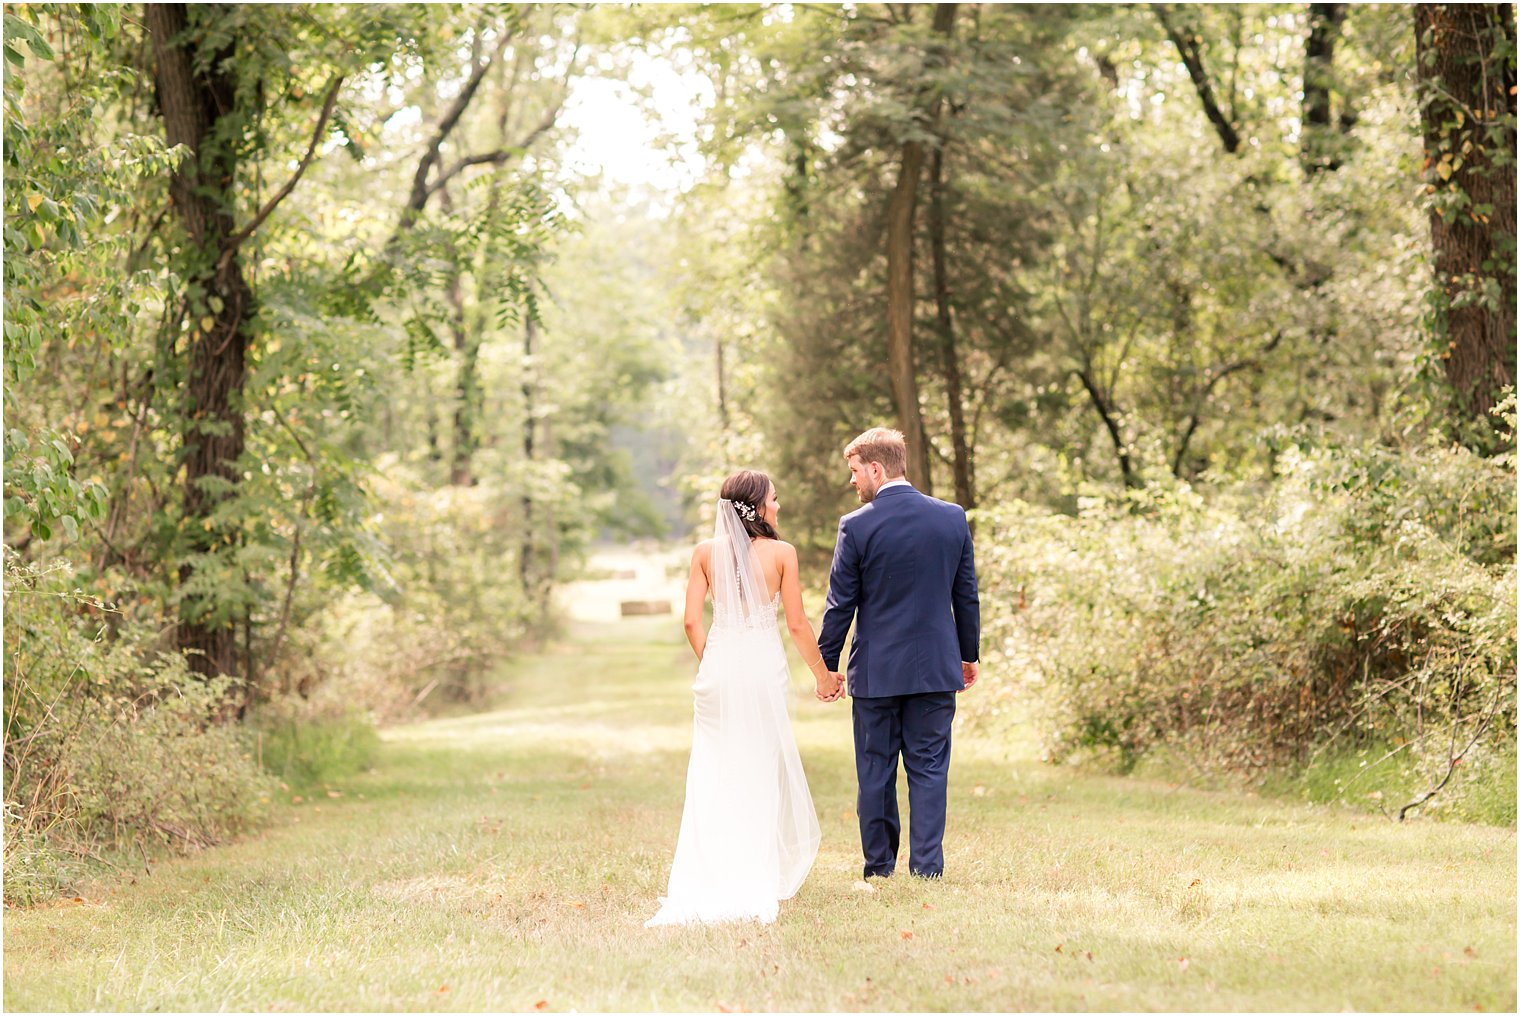 Bride and groom walking in field